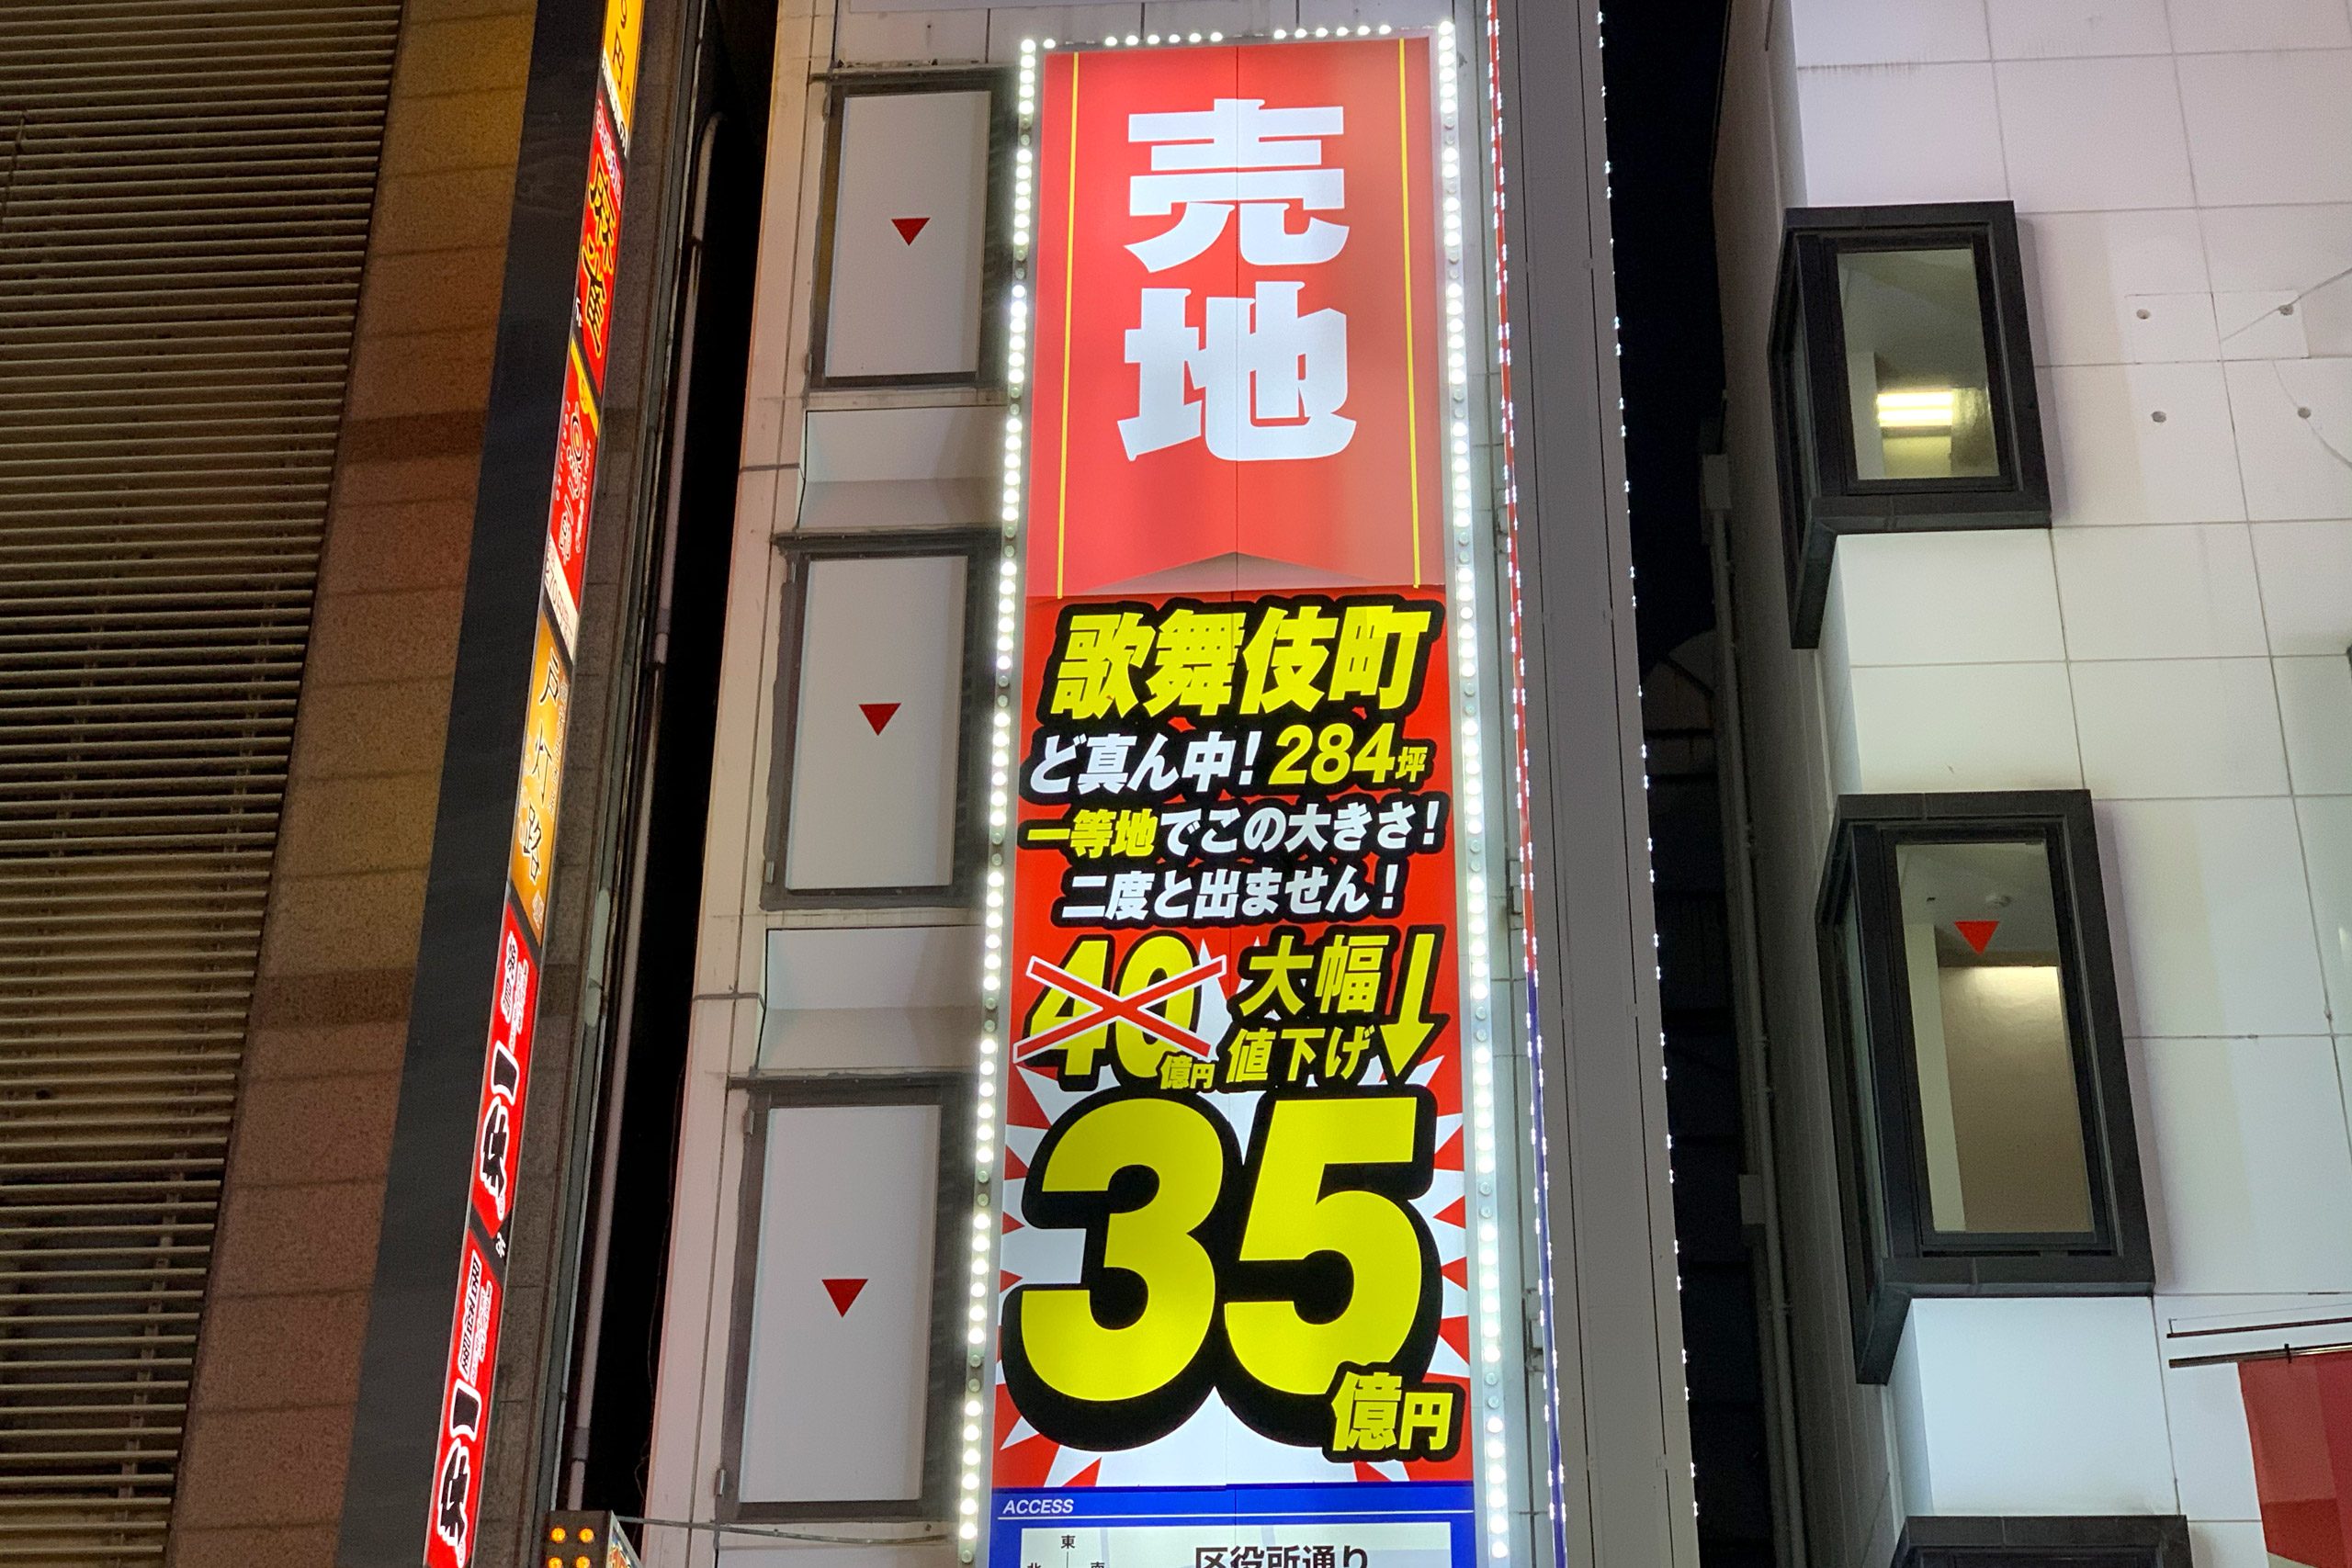 新宿 歌舞伎町の 大幅値下げ が話題 豪快すぎる値引き額に戸惑う人々も Page 2 Sirabee